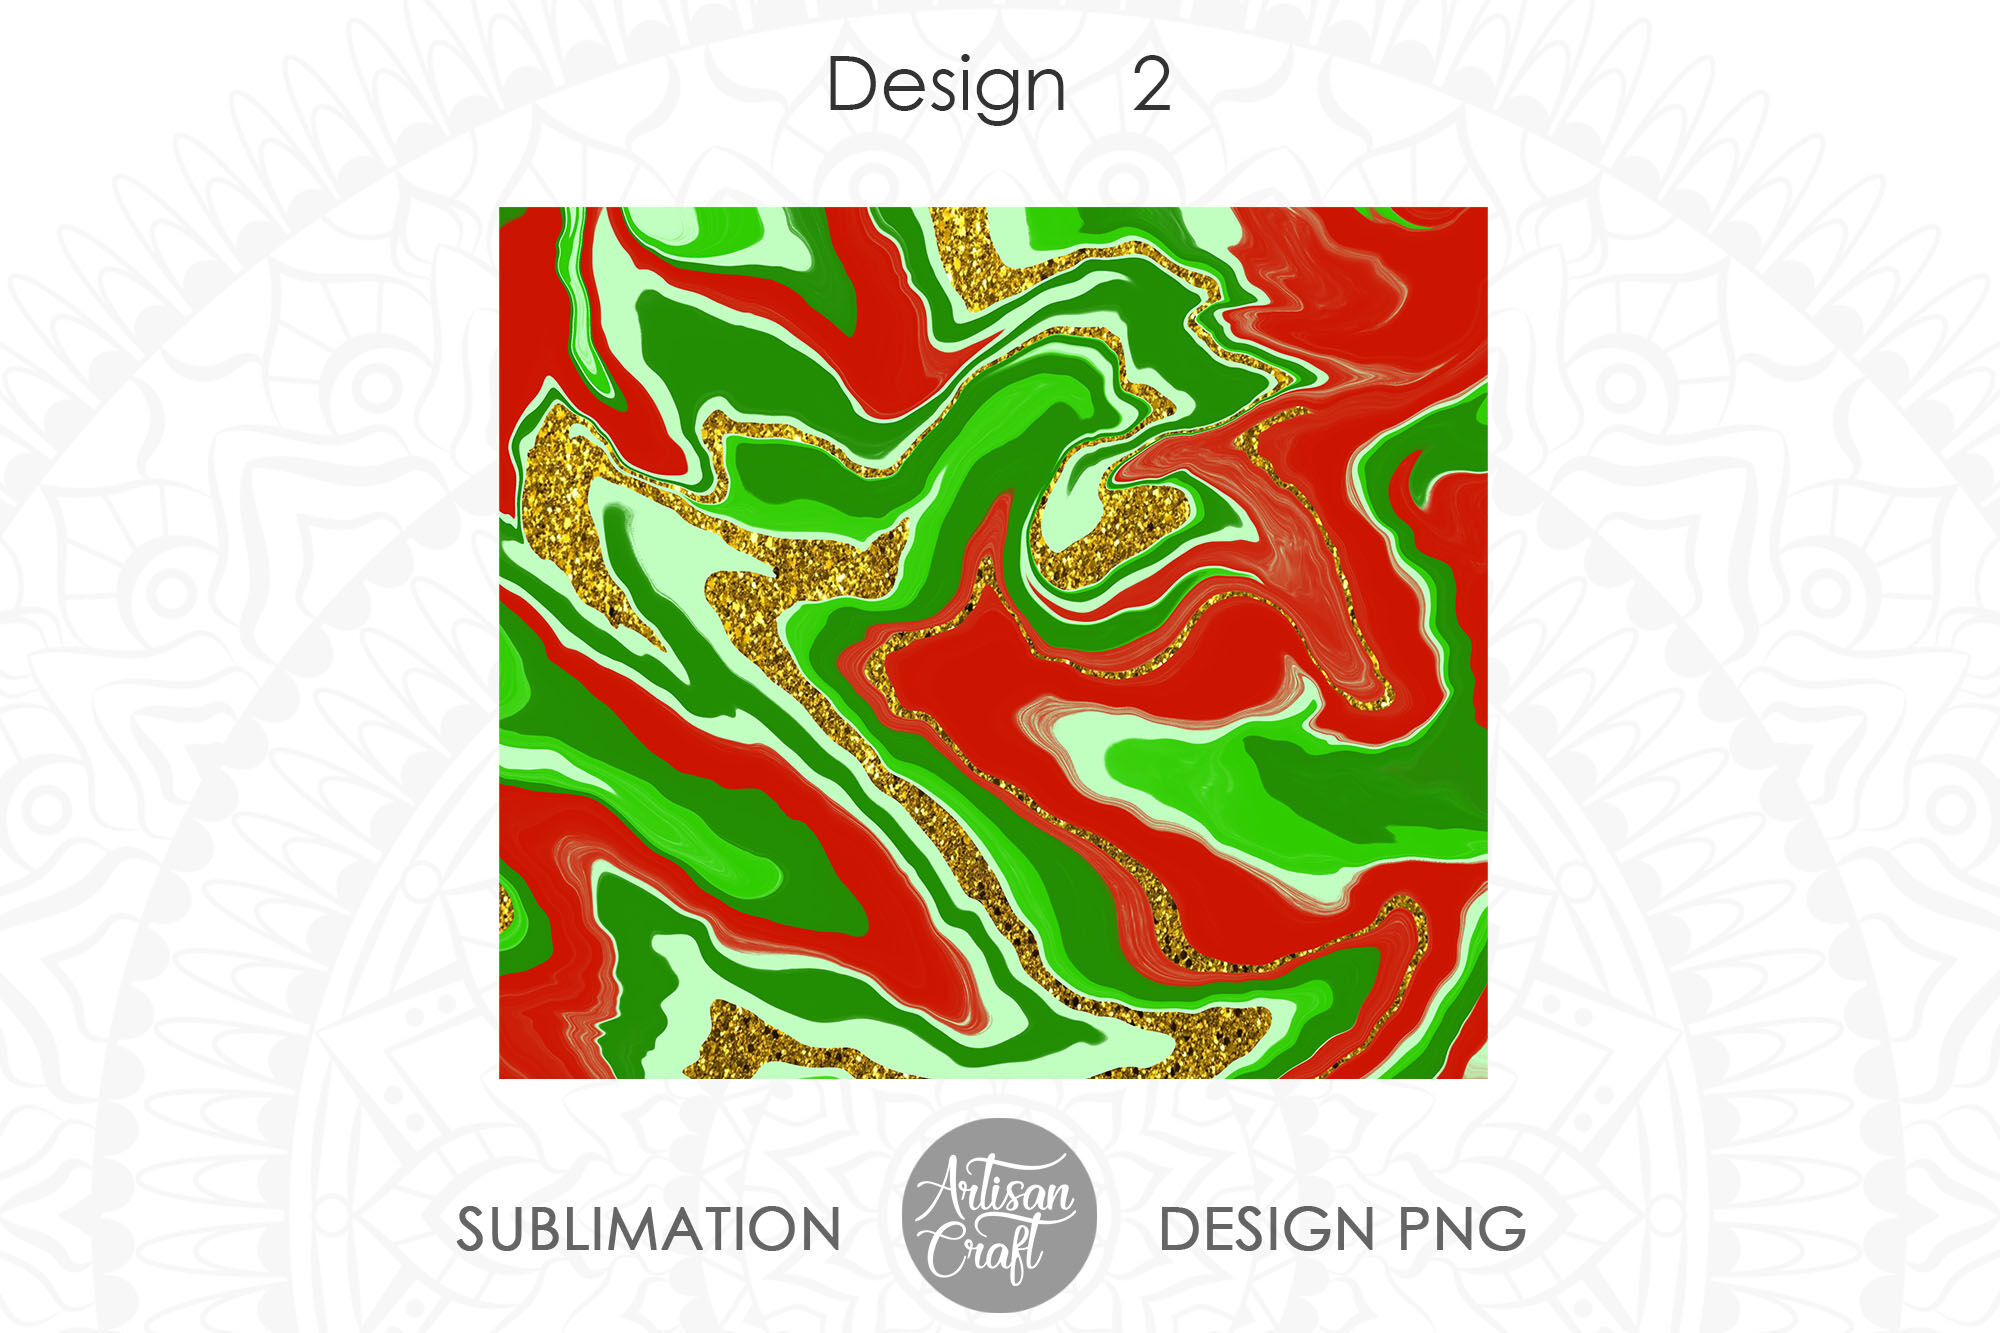 Download Skinny Tumbler Svg Png Jpeg Sublimation Marble Digital Art Collectibles Vadel Com